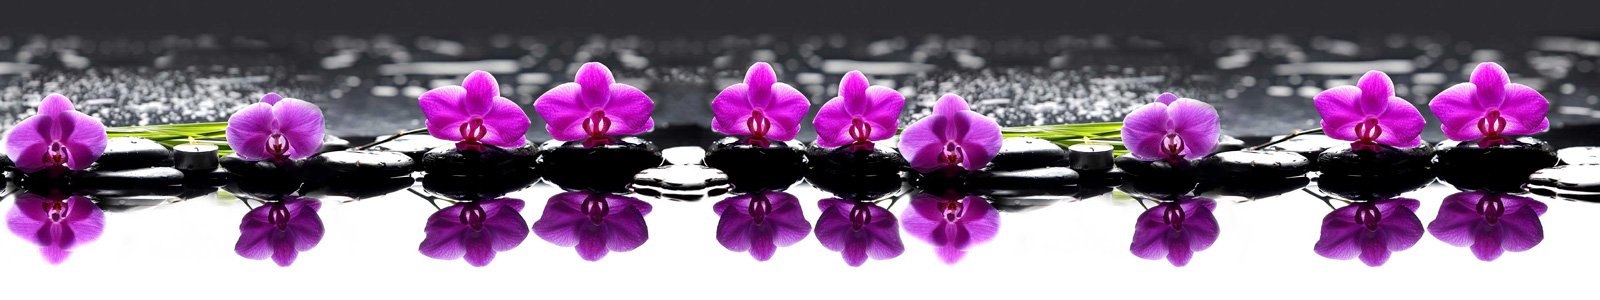 №6751 - Камушки с орхидеями на воде